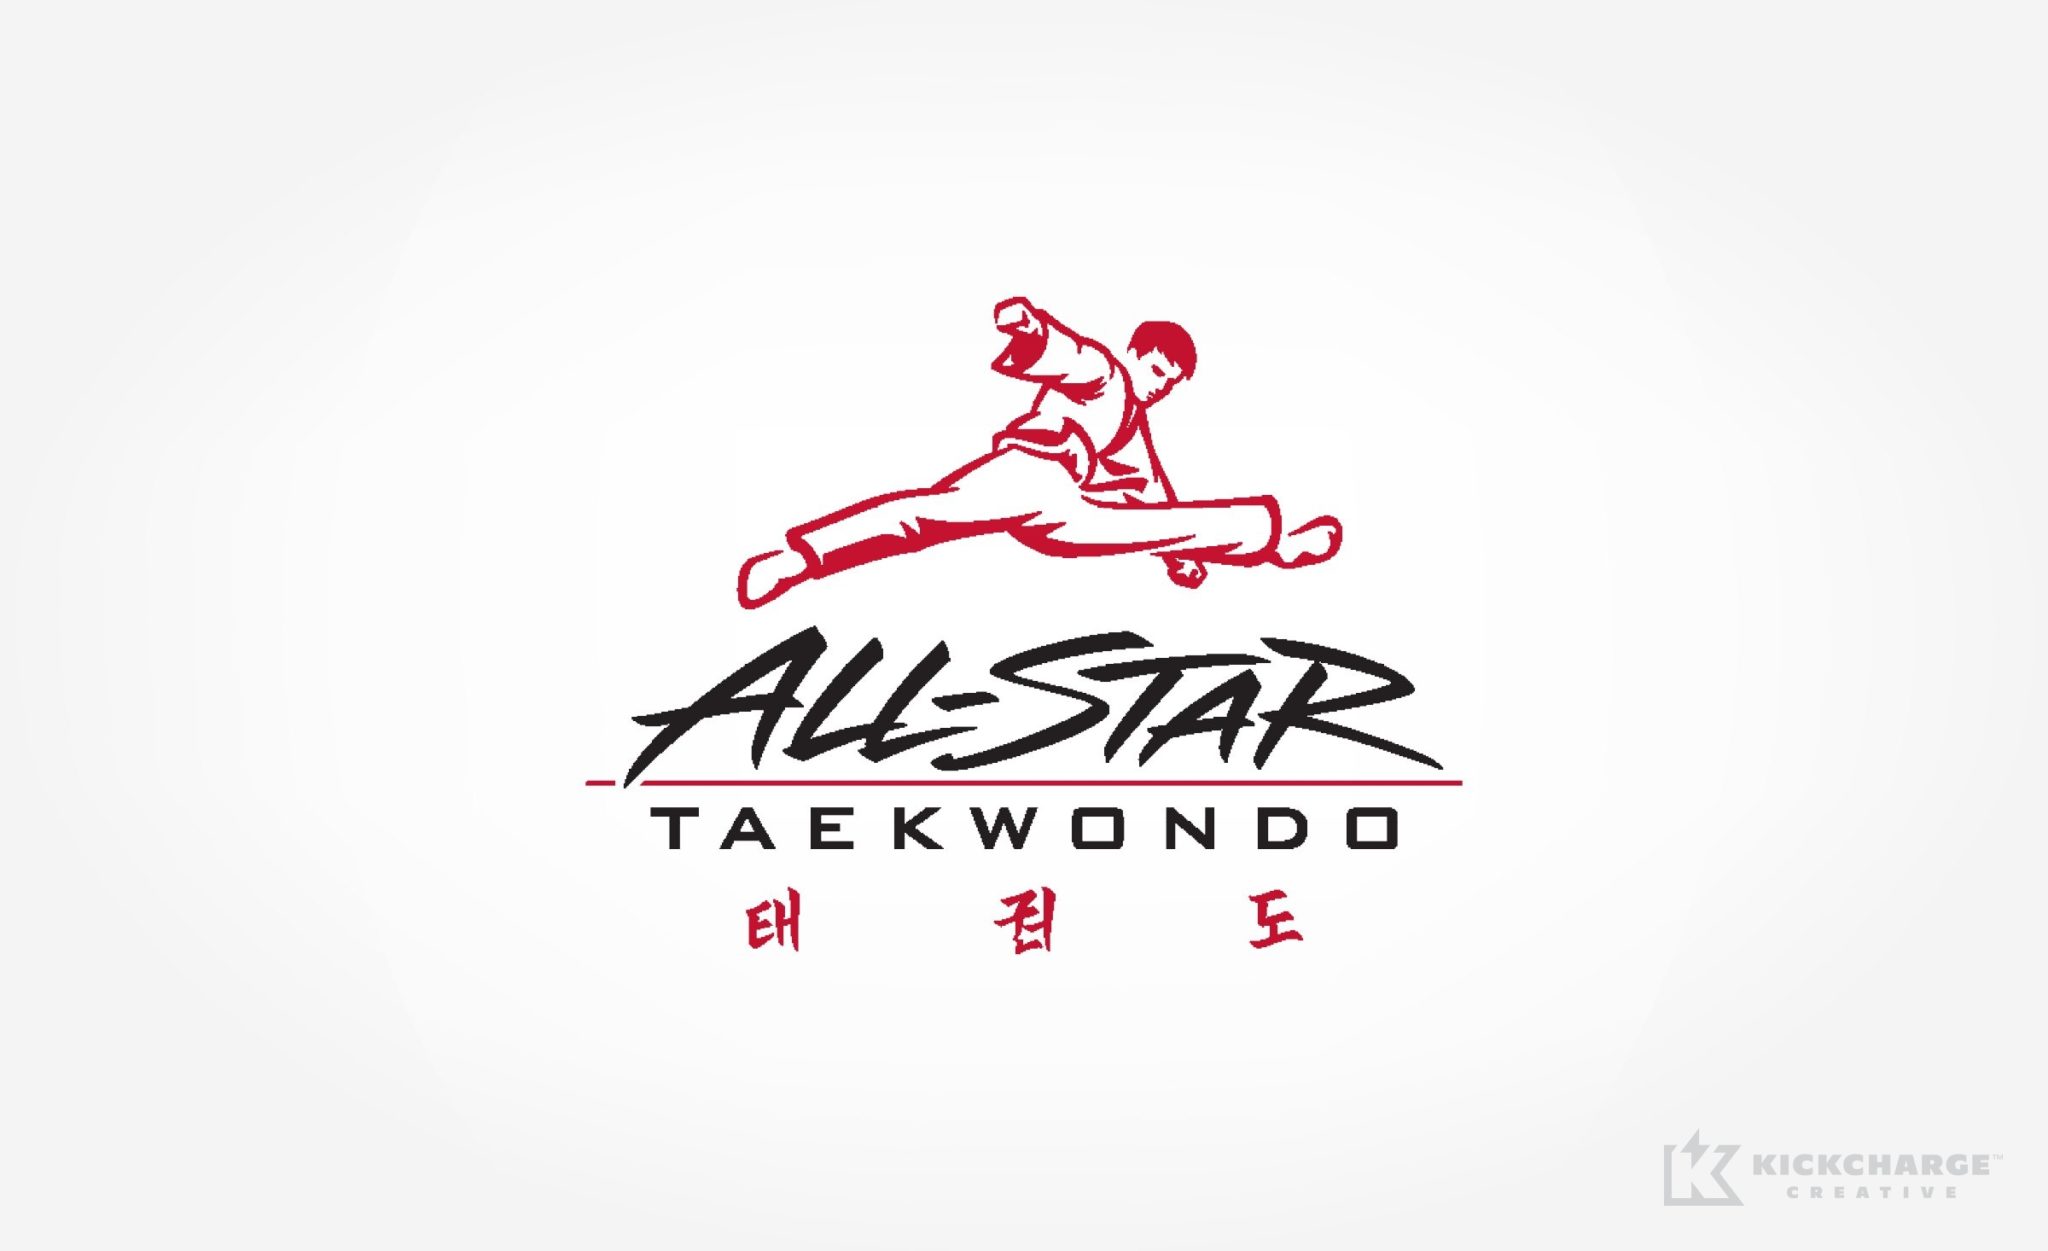 All-Star Taekwondo